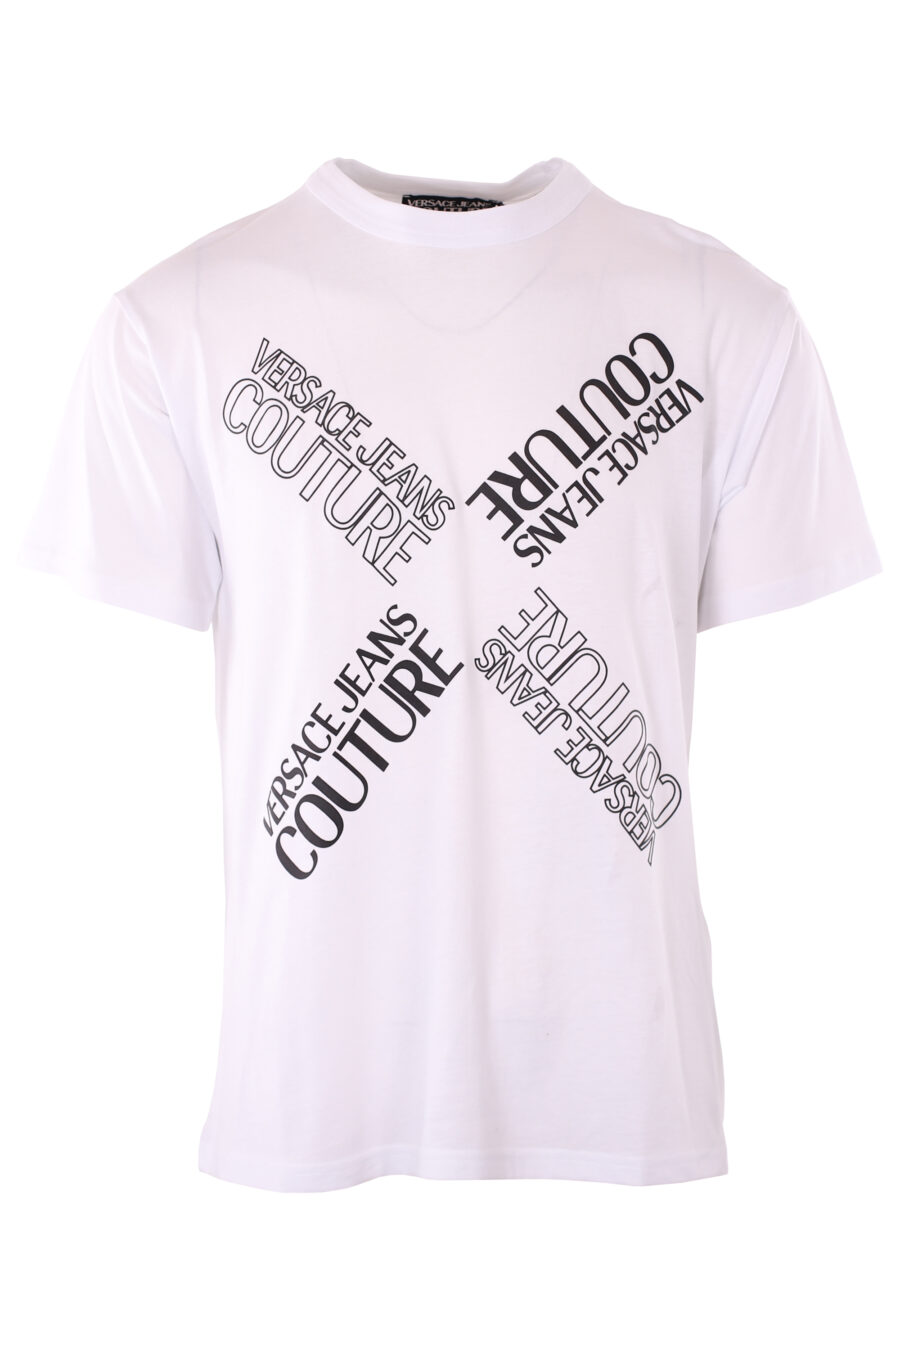 Camiseta blanca con logo negro en diagonal - IMG 6563